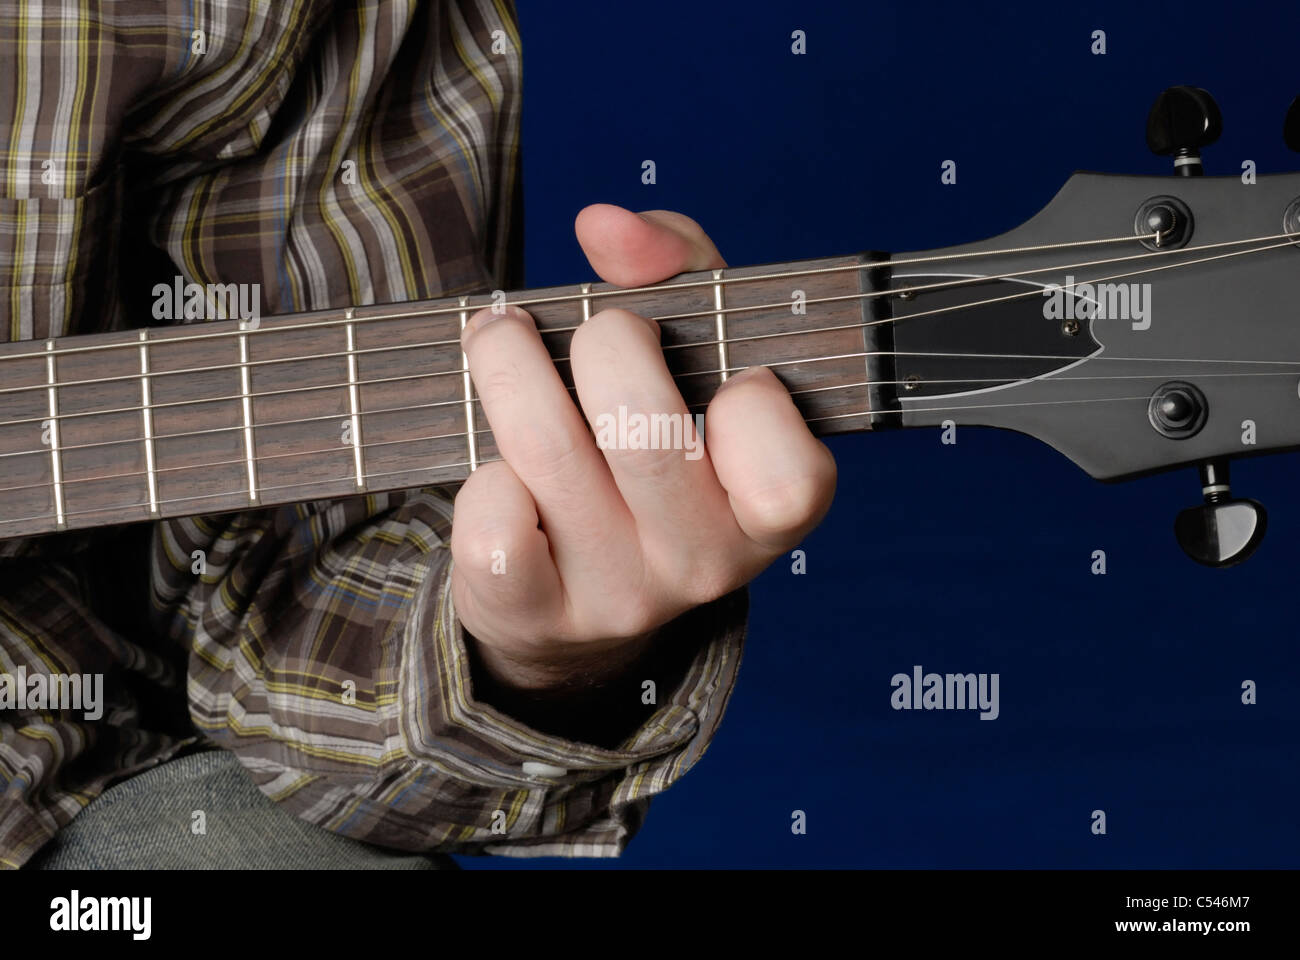 Accordi chitarra do immagini e fotografie stock ad alta risoluzione - Alamy